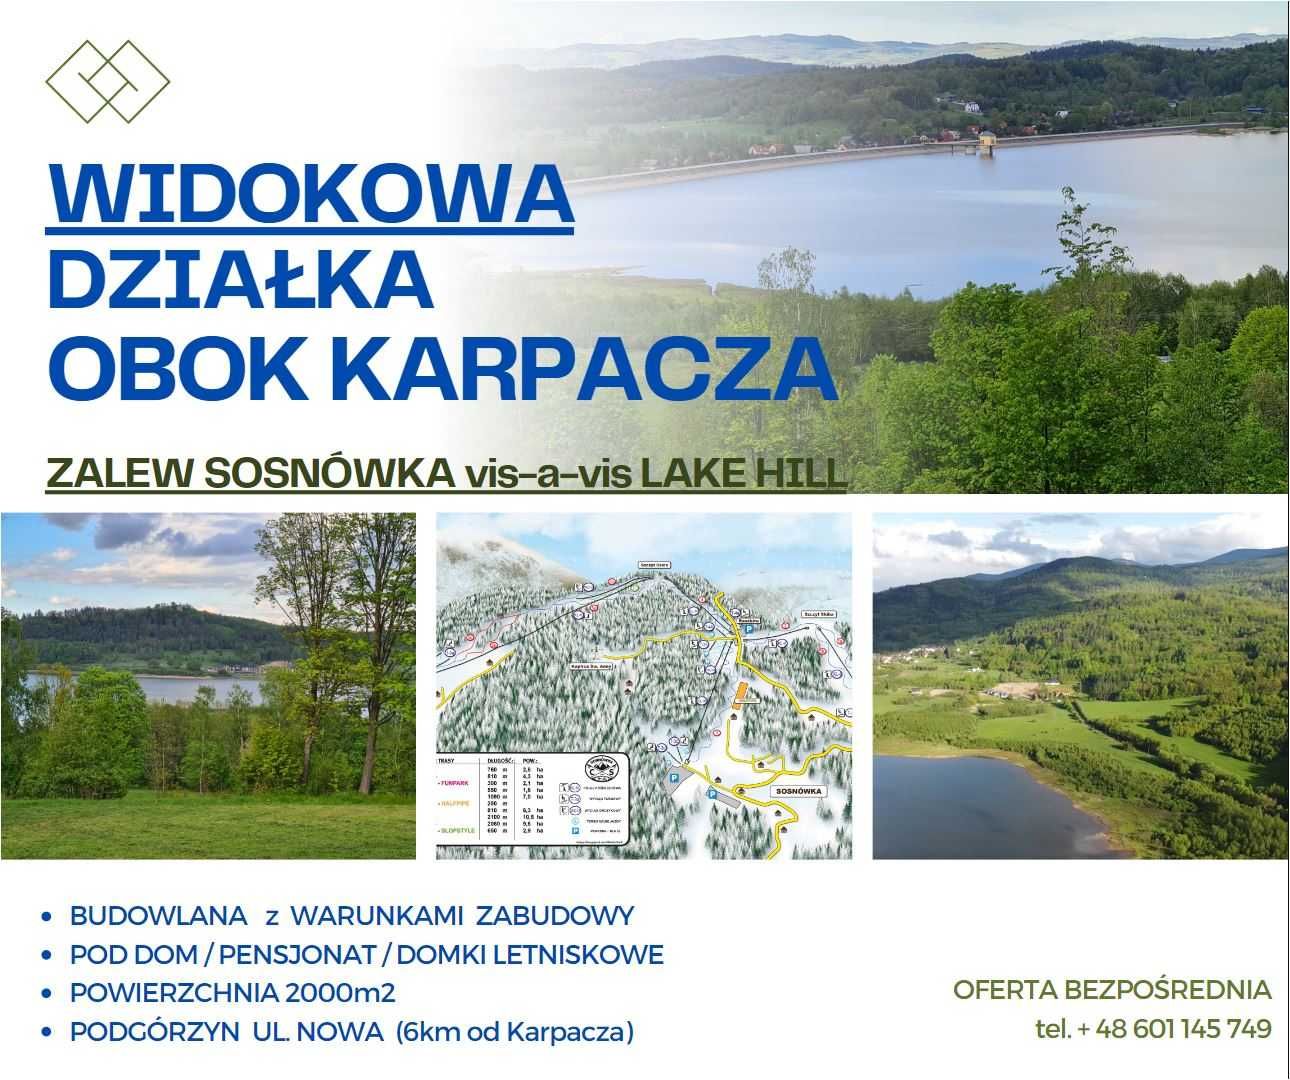 PEREŁKA wśród nieruchomości obok KARPACZA zalew Sosnówka /LAKE HILL